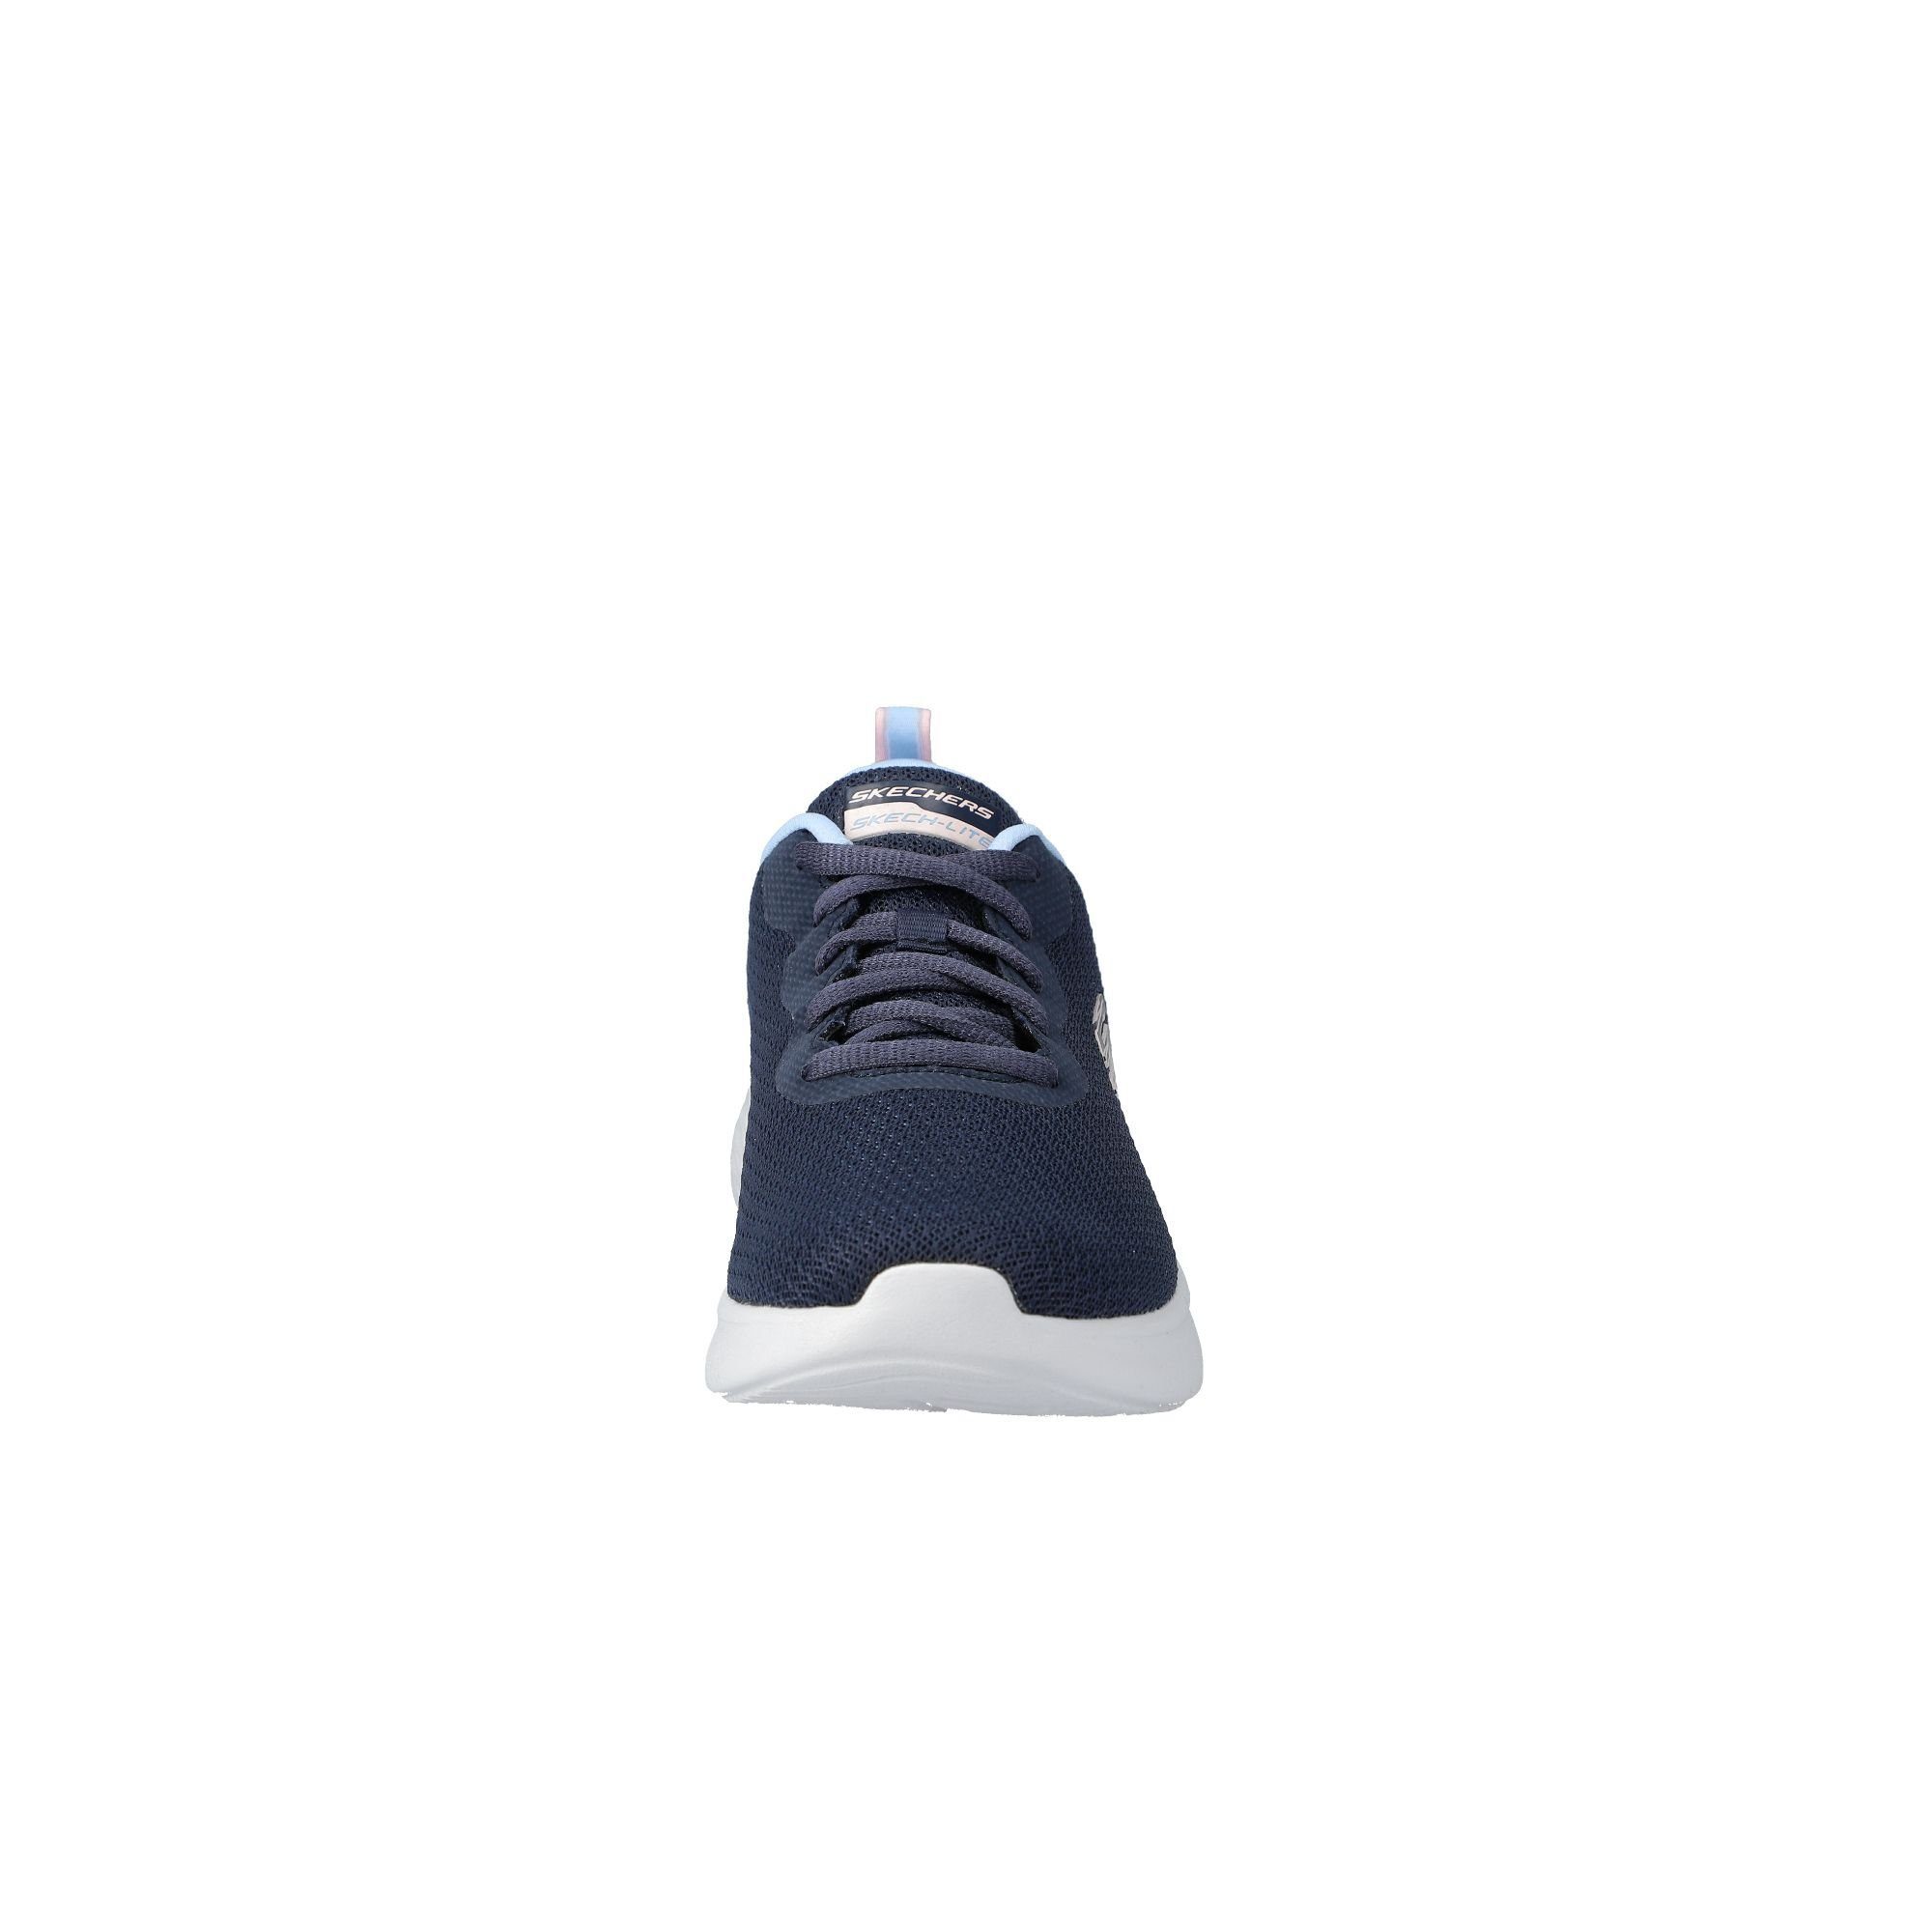 Skechers Sneaker navy/blue